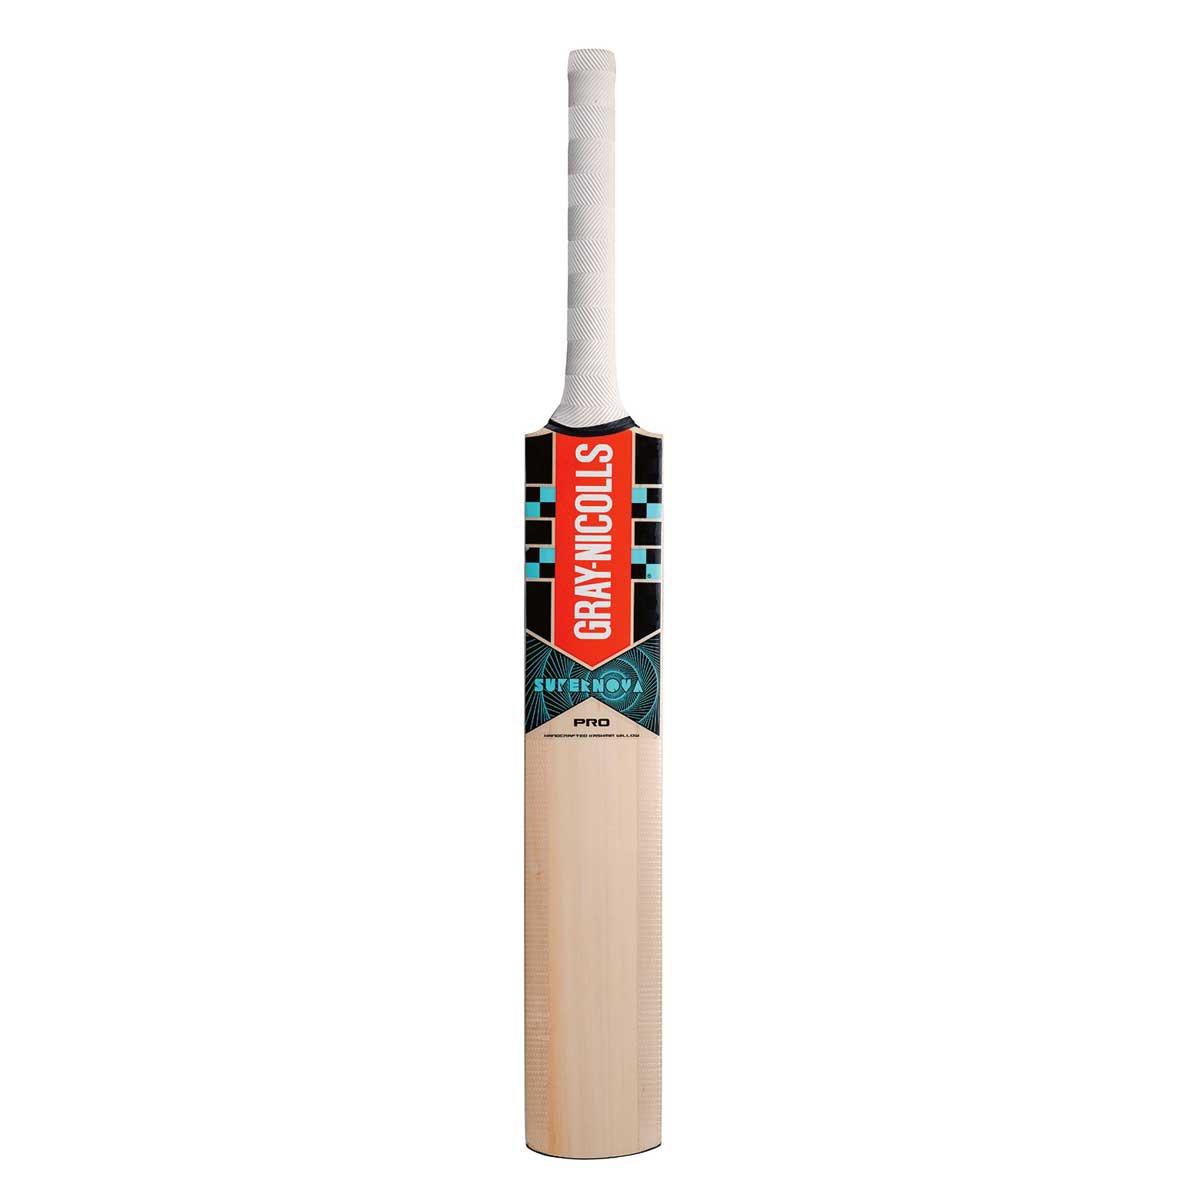 3 months old snooker kit cricket bat